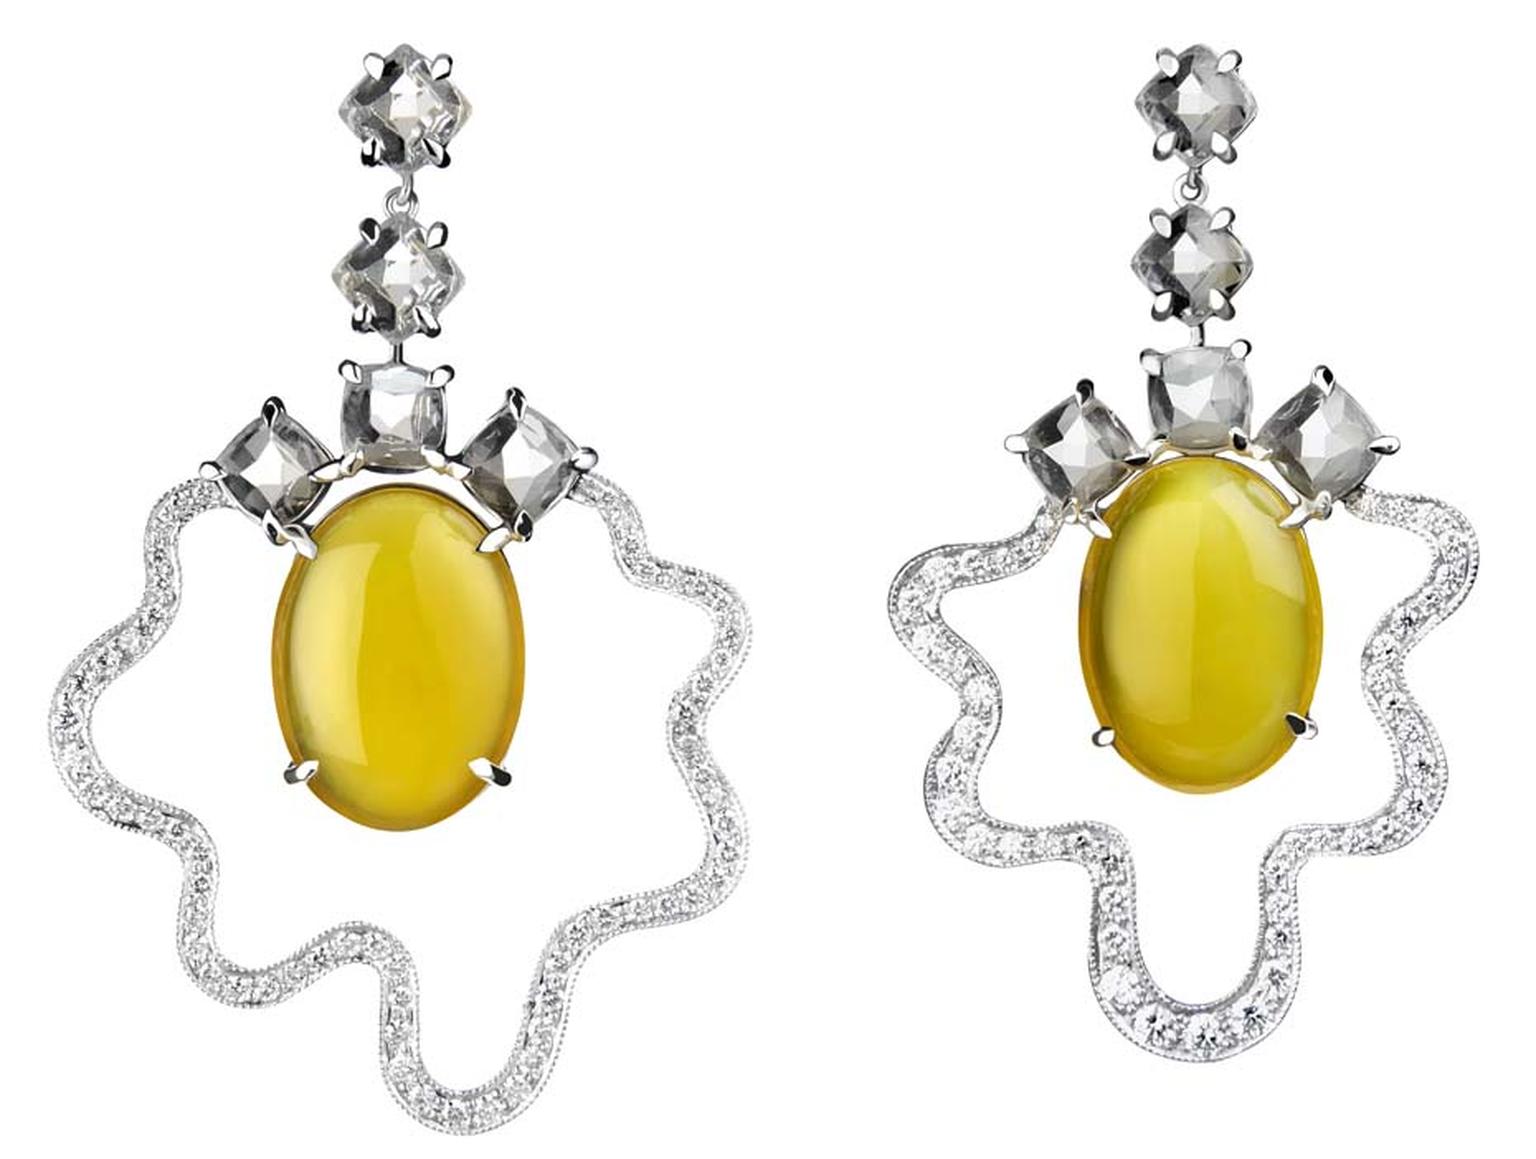 Tessa Packard white gold and diamond Fried Egg earrings